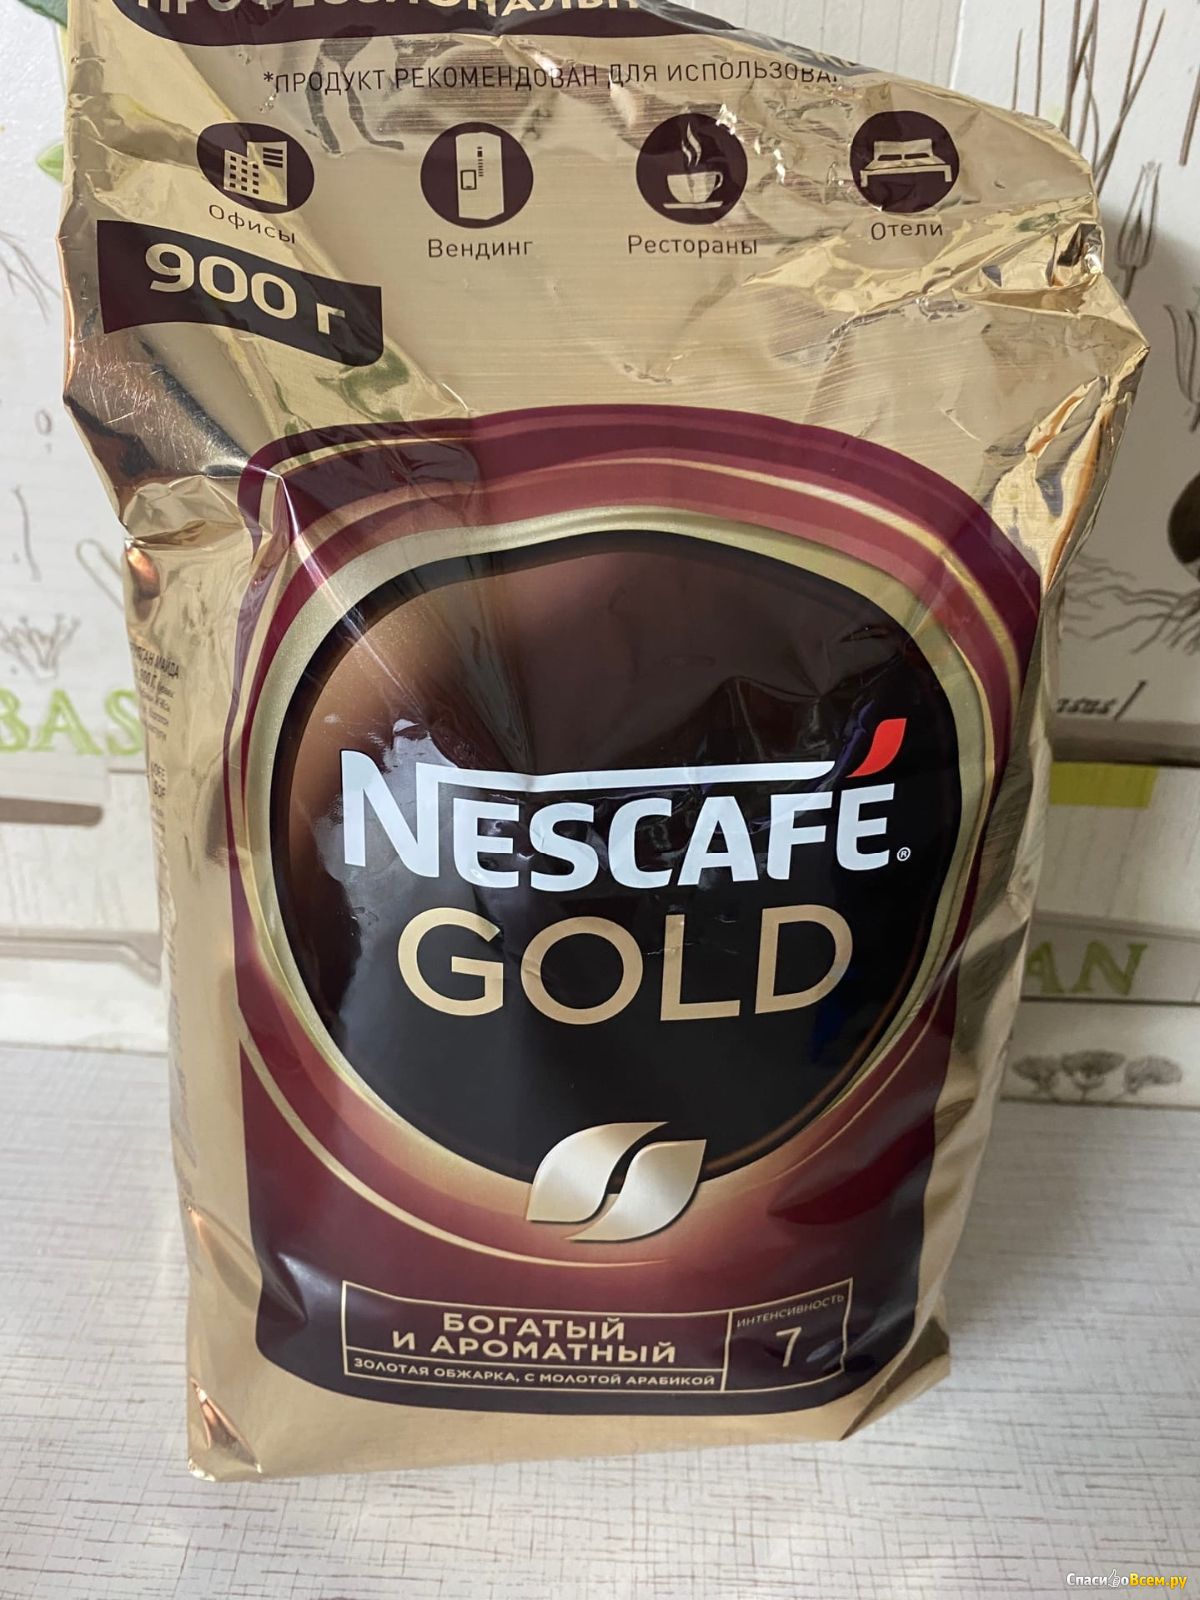 Nescafe gold 190 г. Кофе Нескафе. Кофе в золотой упаковке. Кофе Nescafe Gold пакет 500 гр. Нескафе Голд 170.